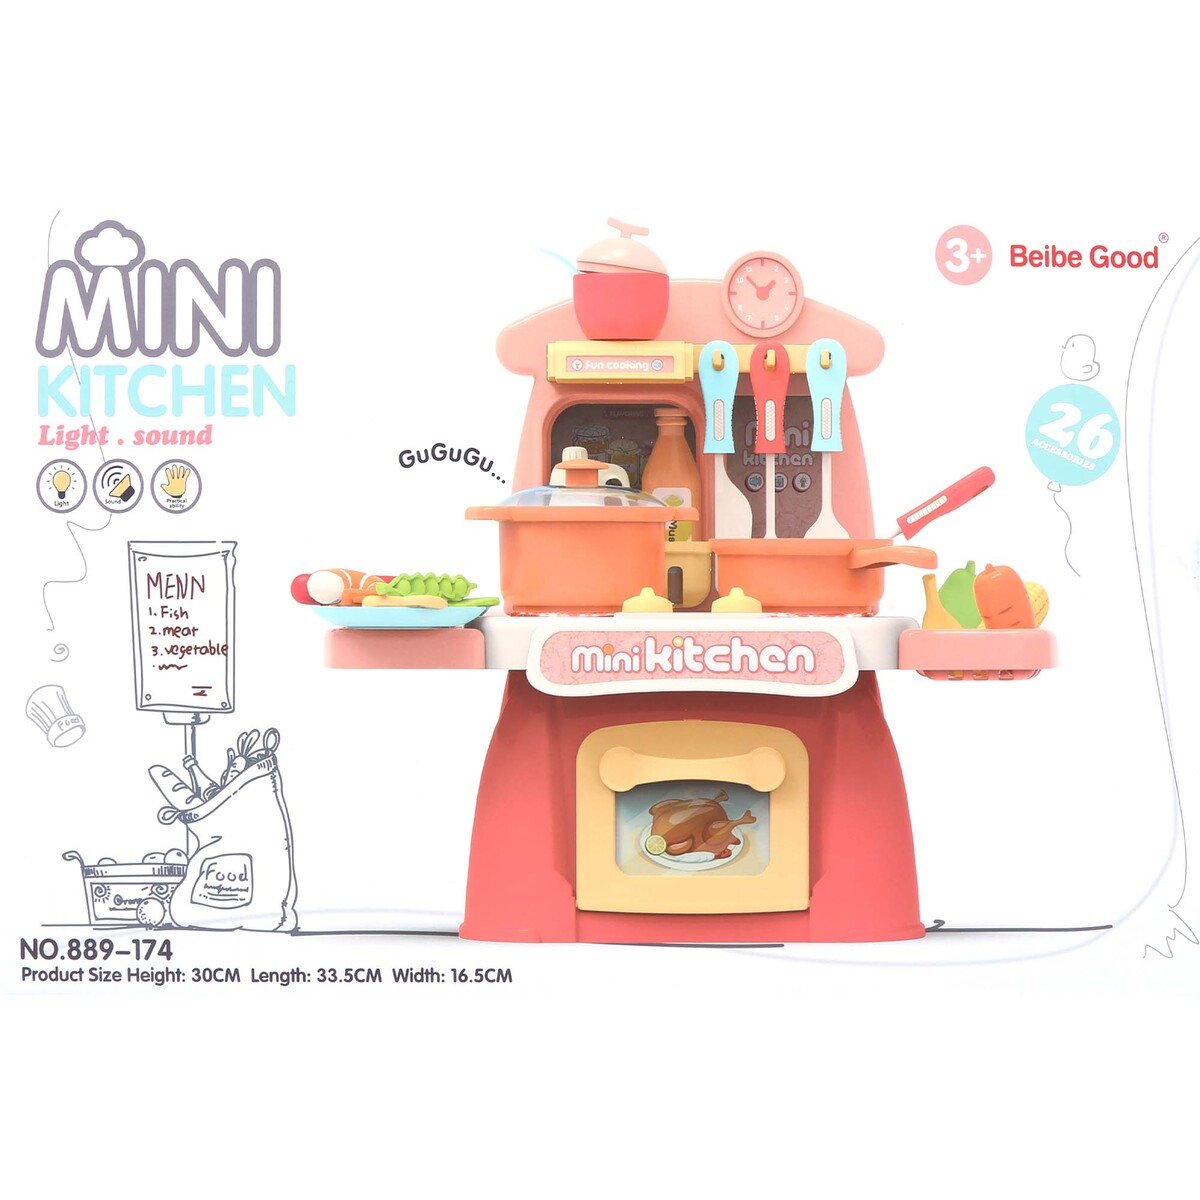 Beibe Good Mini Kitchen Set 889-174